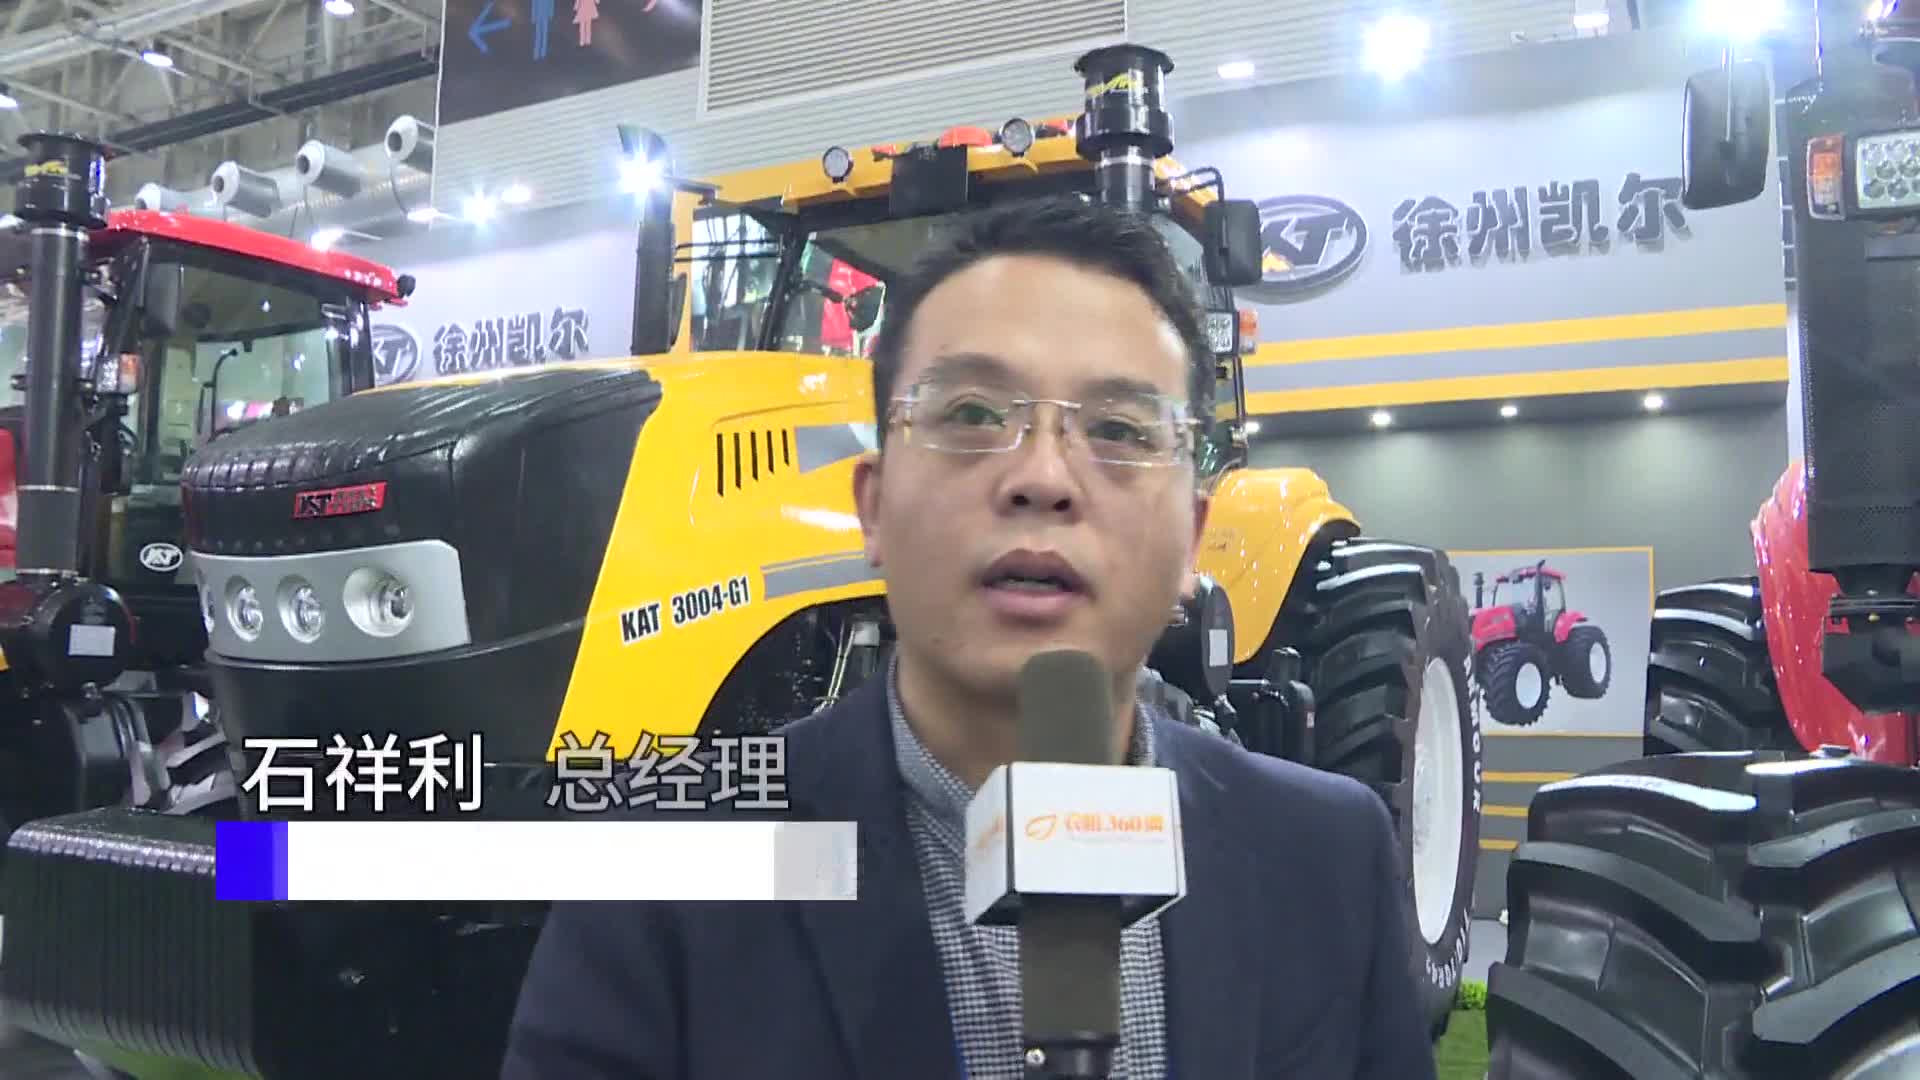 【2020年全国农机展】农机360网专访徐州凯尔农业装备股份有限公司石祥利总经理